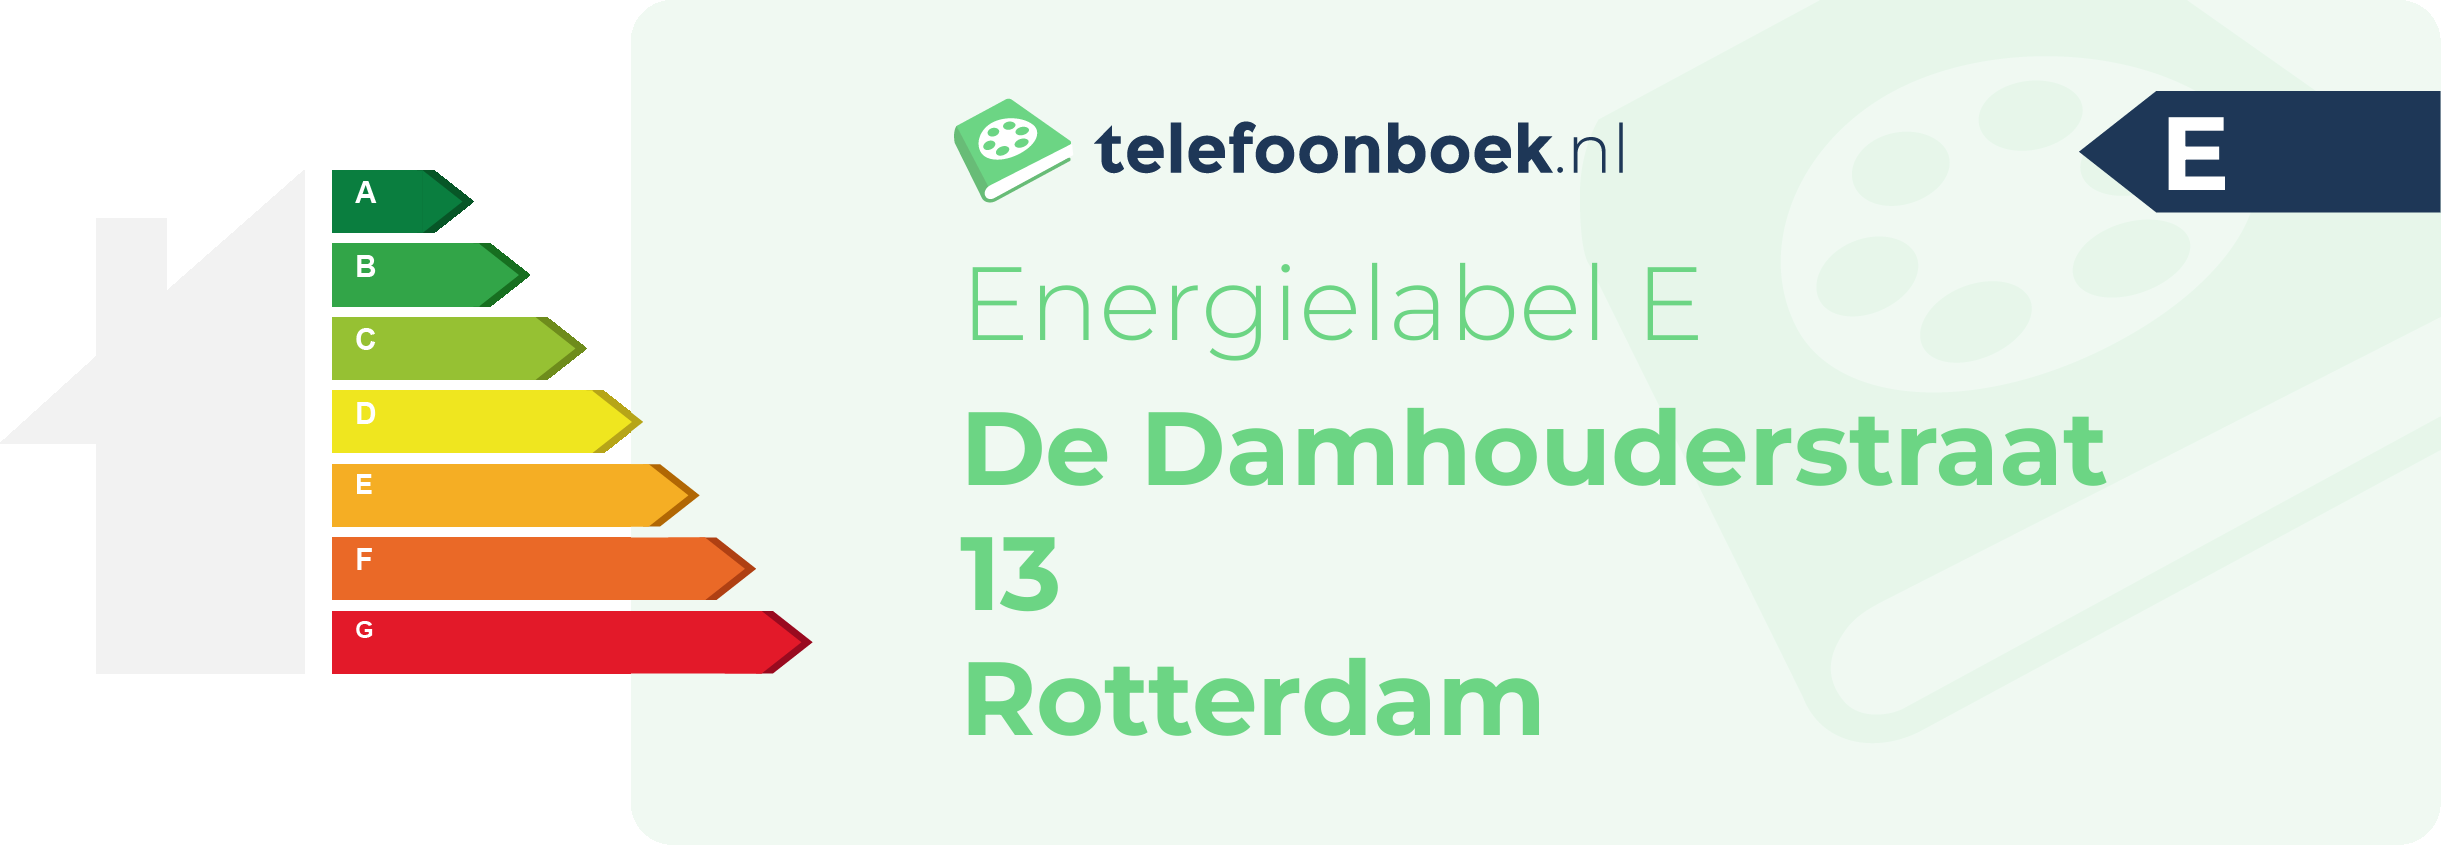 Energielabel De Damhouderstraat 13 Rotterdam